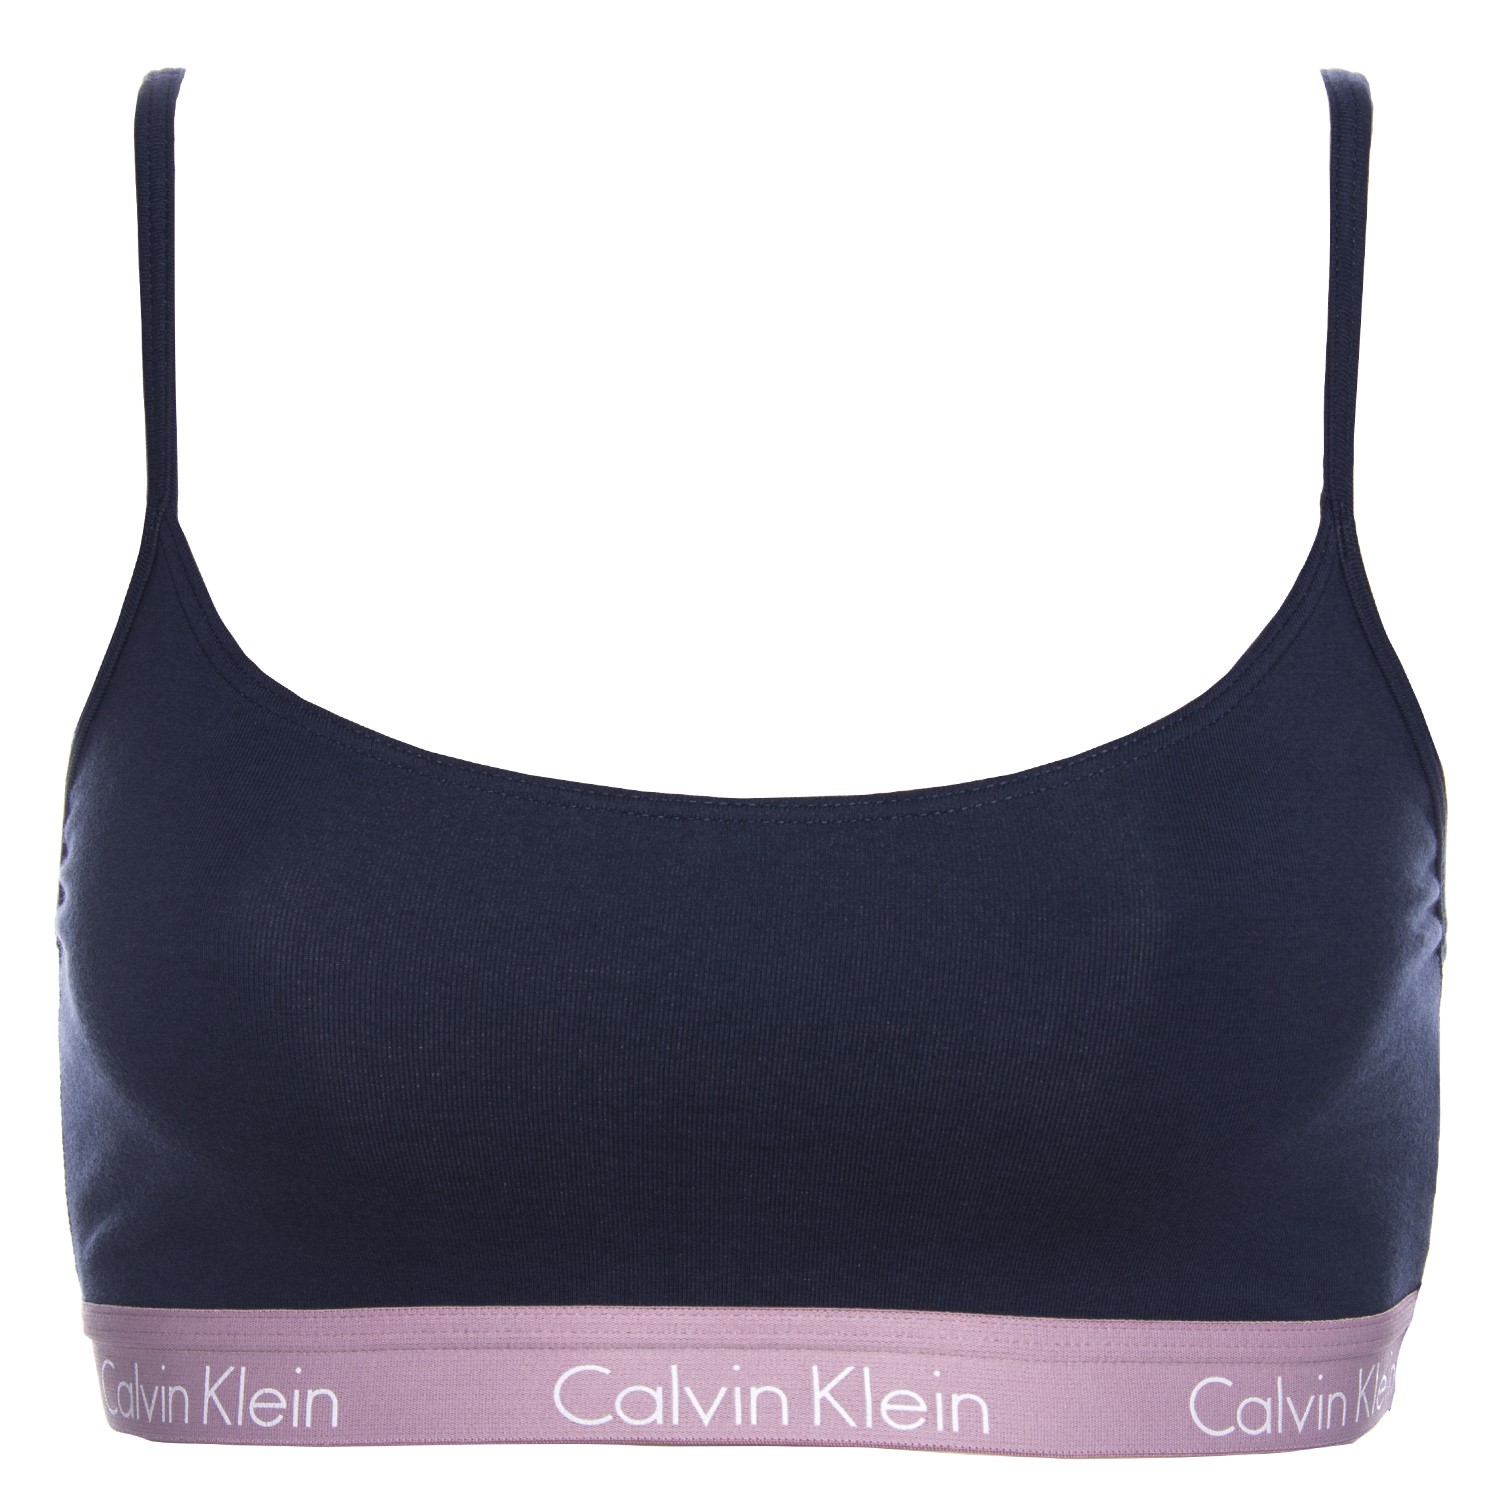 Calvin Klein CK One Cotton Bralette